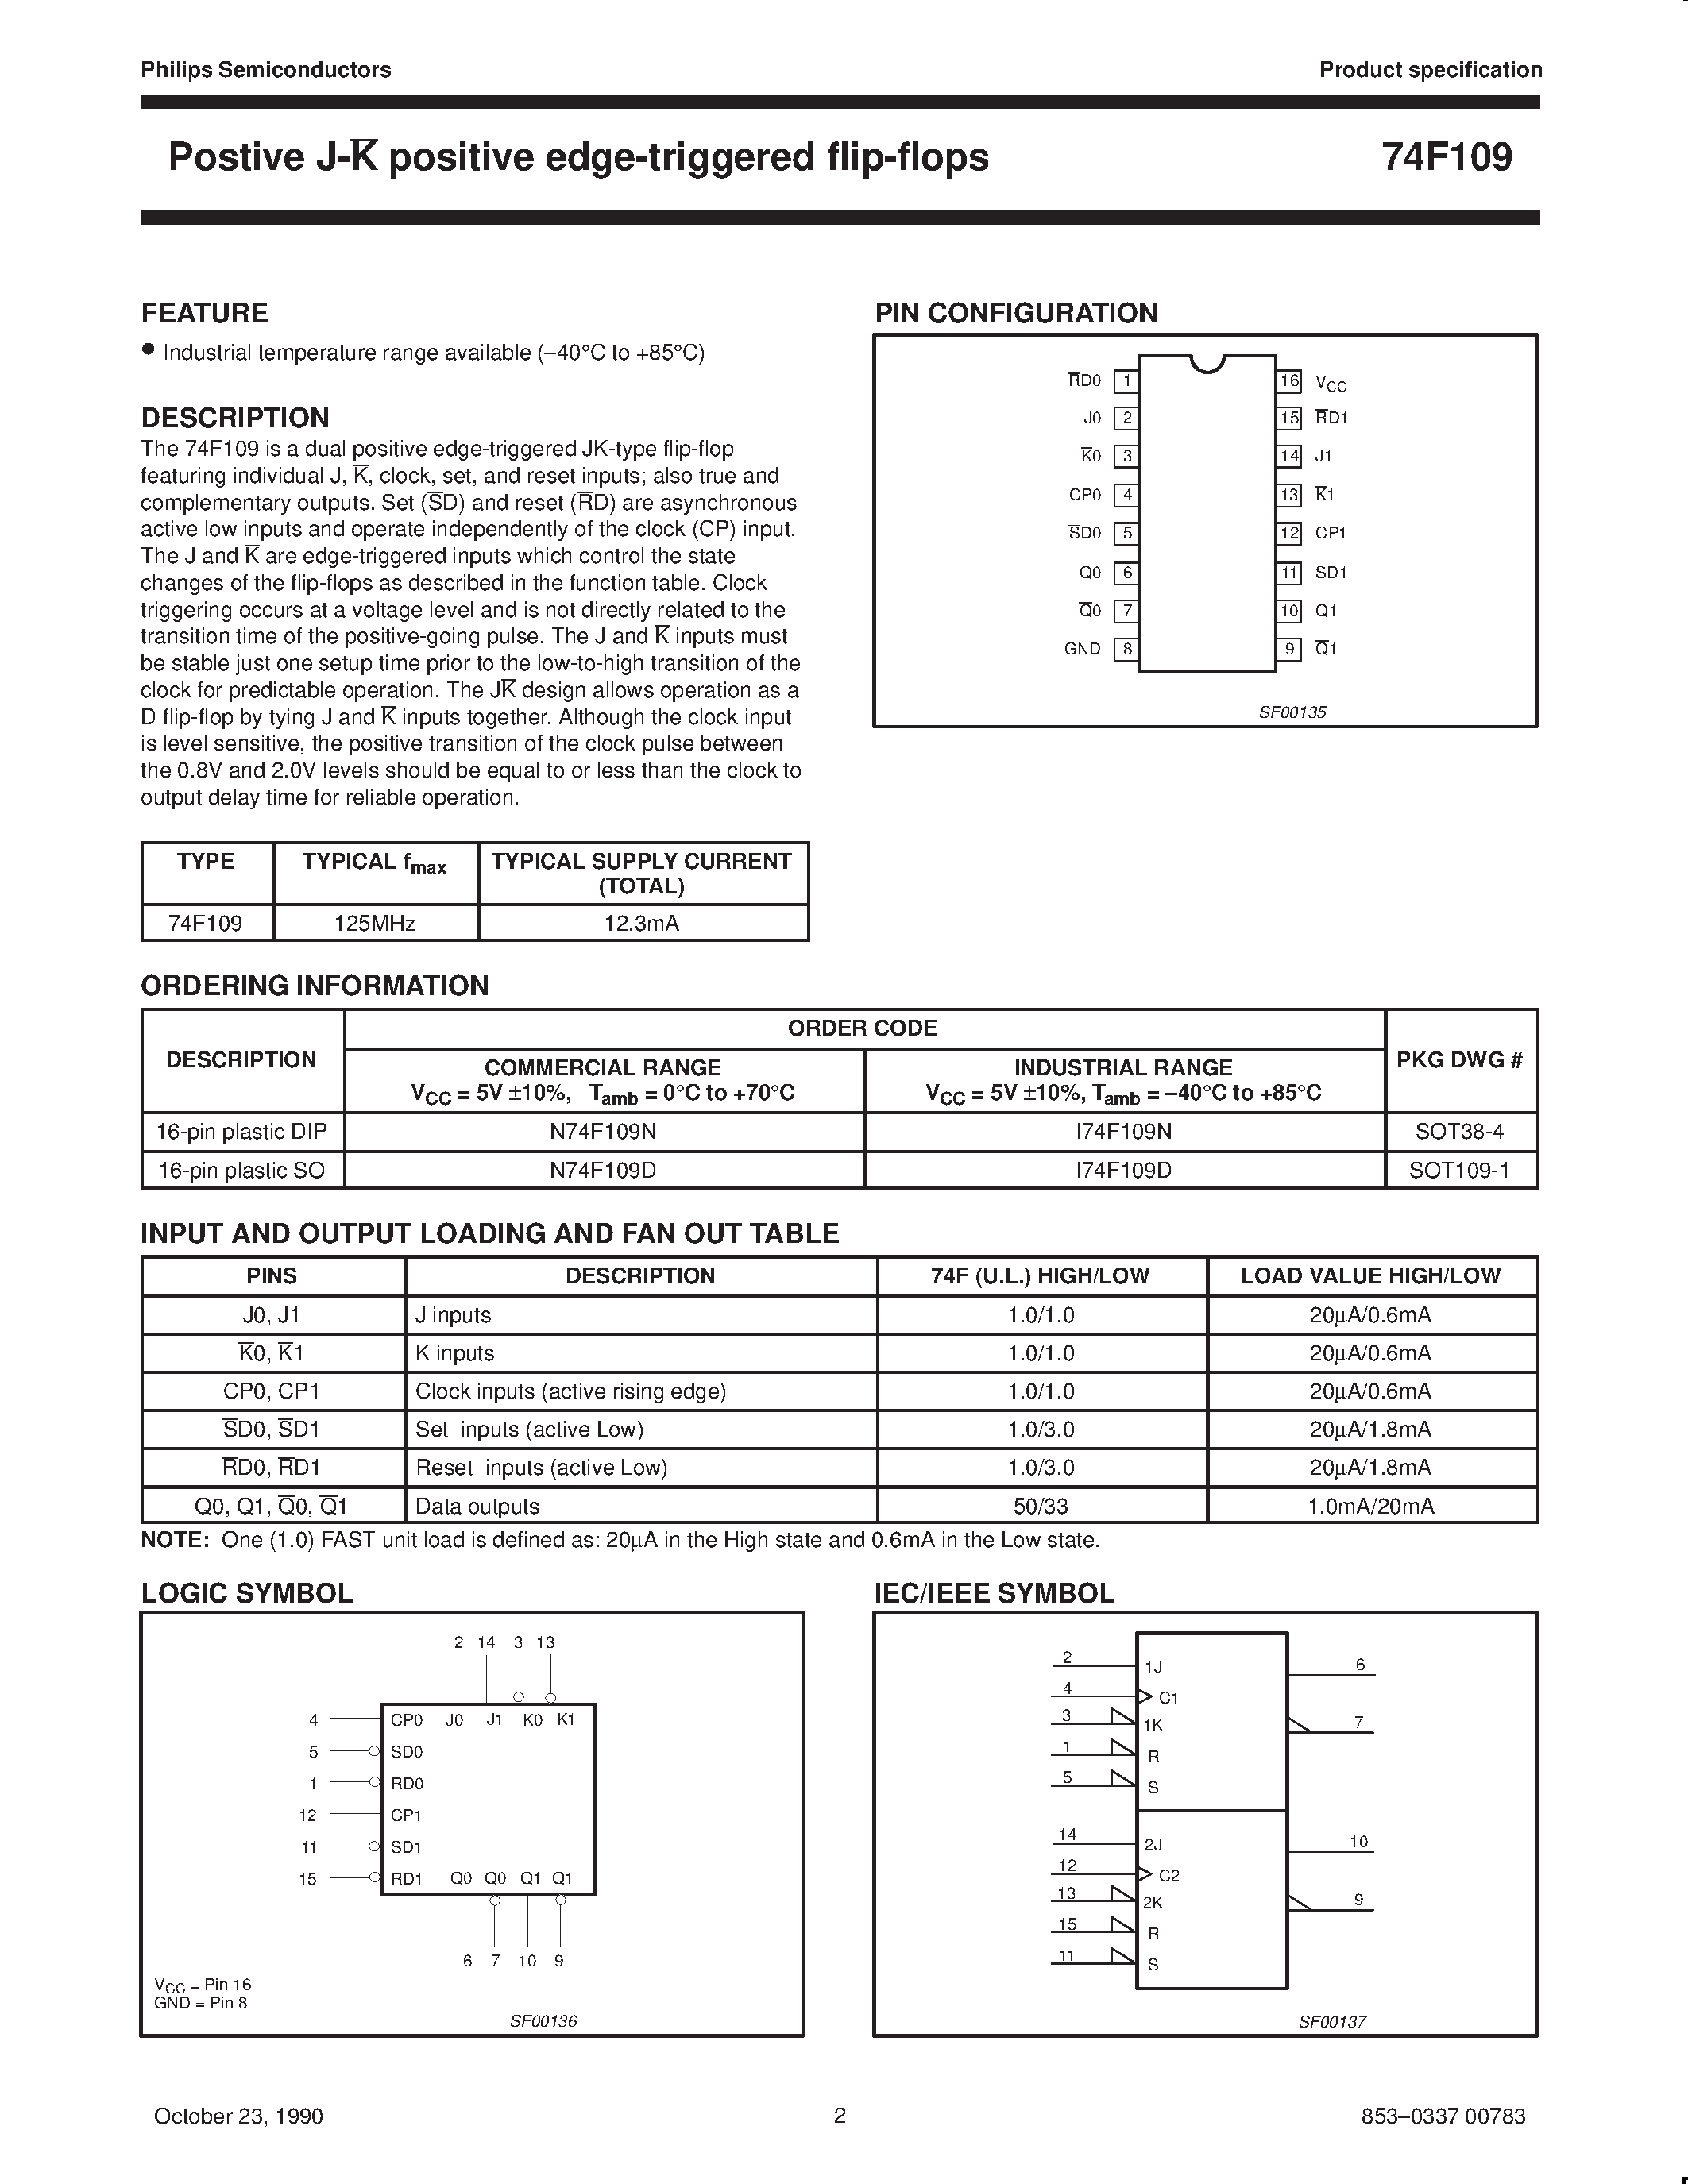 Datasheet 74F109 - Positive J-K positive edge-triggered flip-flops page 2